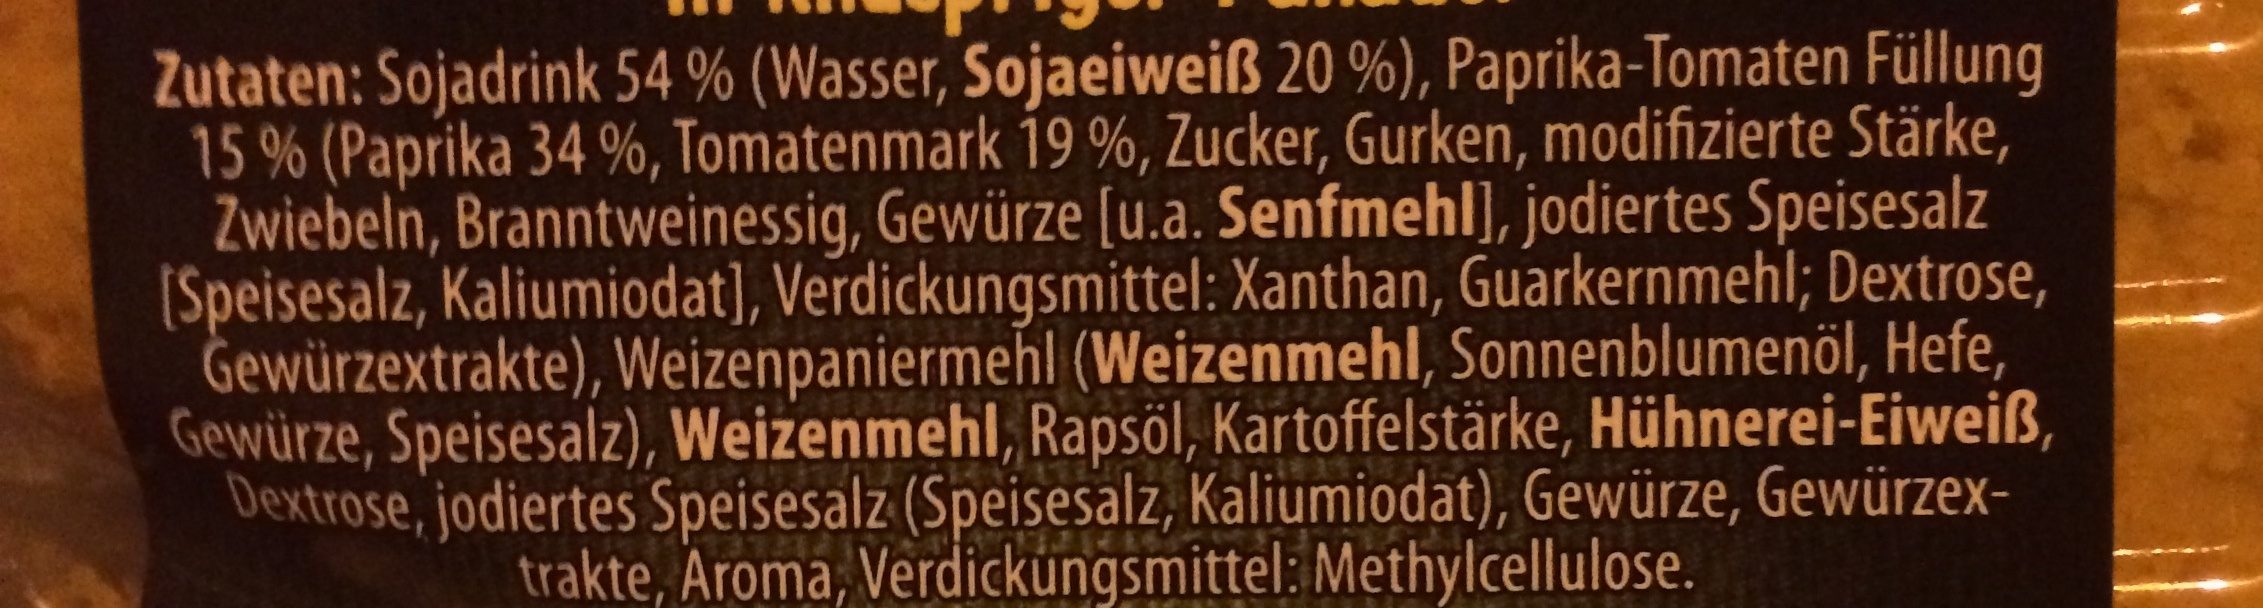 Veggie Schnitzel mit emmentaler Füllung - Ingredients - de